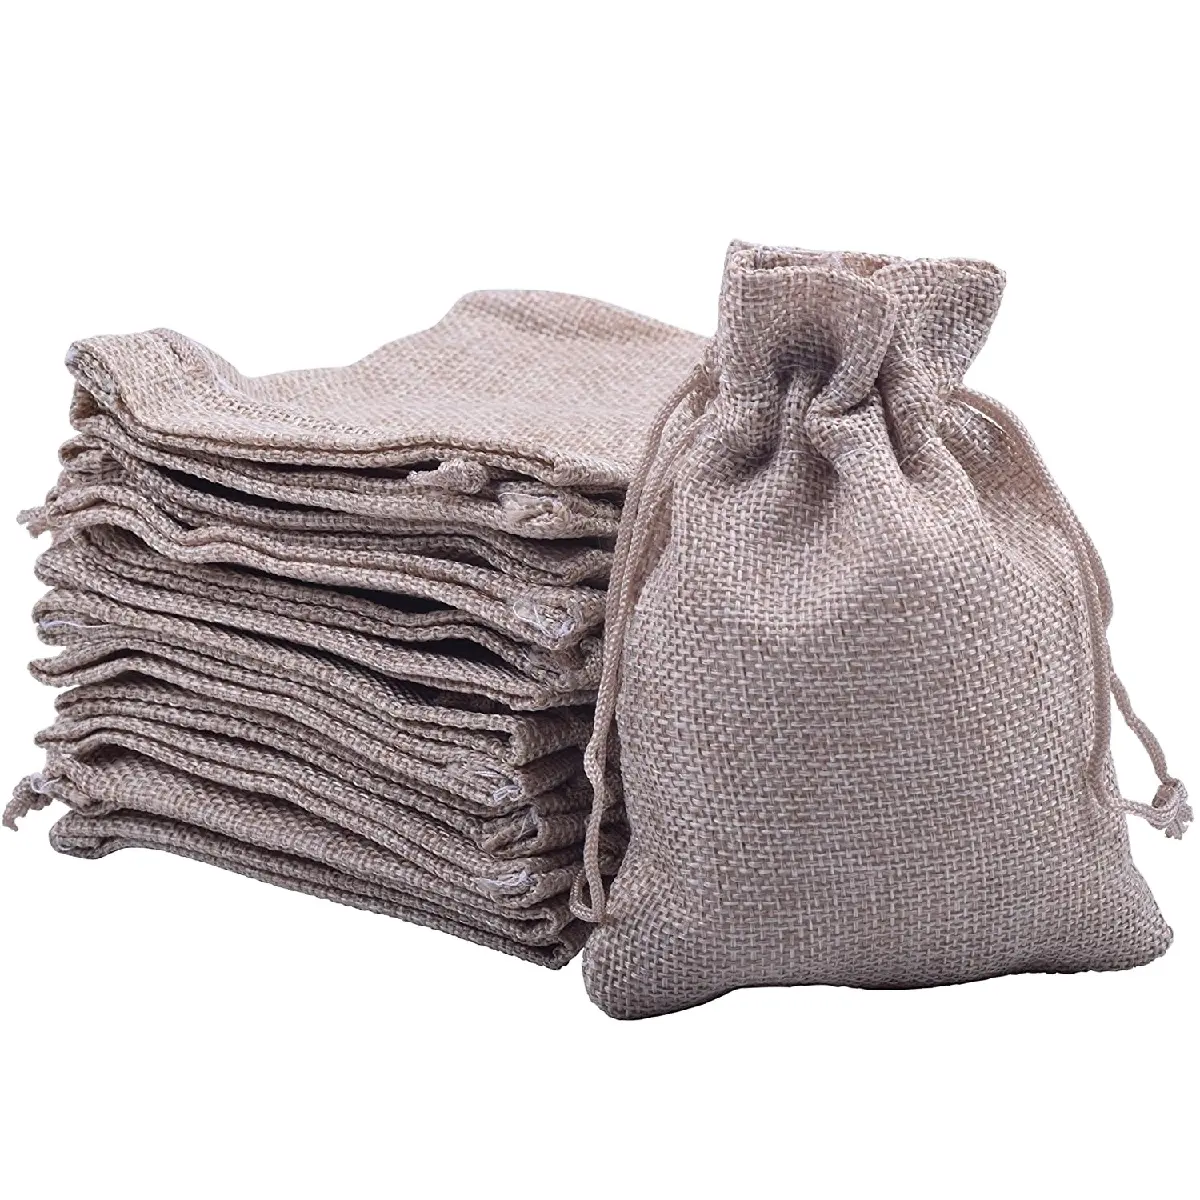 ナチュラルジュート黄麻布バッグサックファクトリーカスタムサックジュートバッグ米粒種子バングラデシュの農業用包装袋